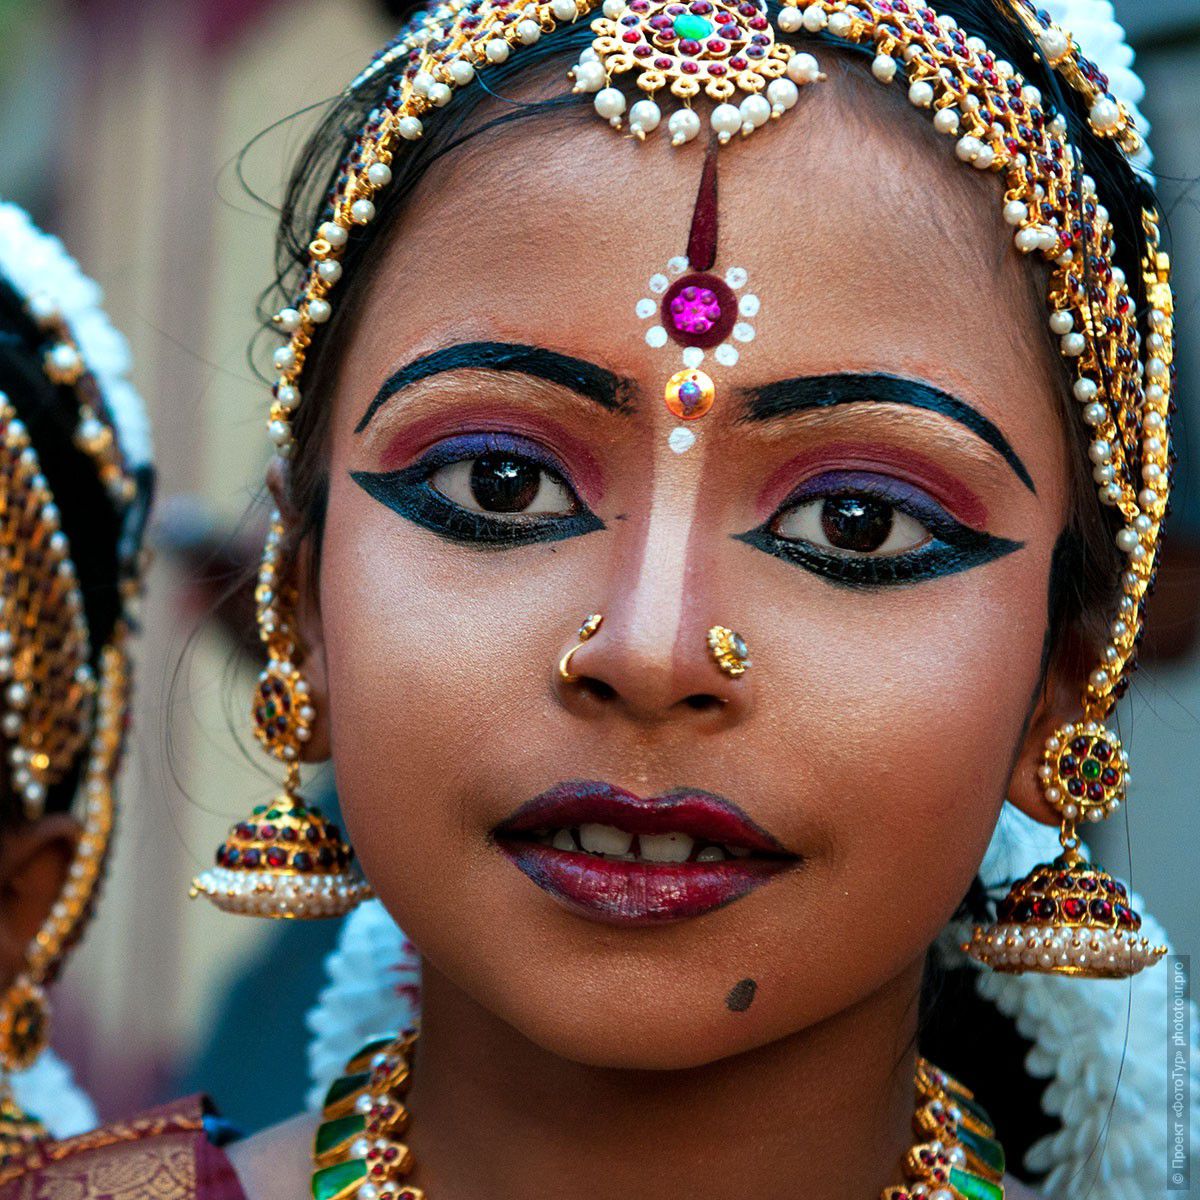 Фотография юная девочка, танцующая на празднике Шри Махашиваратри, 20.02.2012г., Тривандрум. Фототур в Кералу.